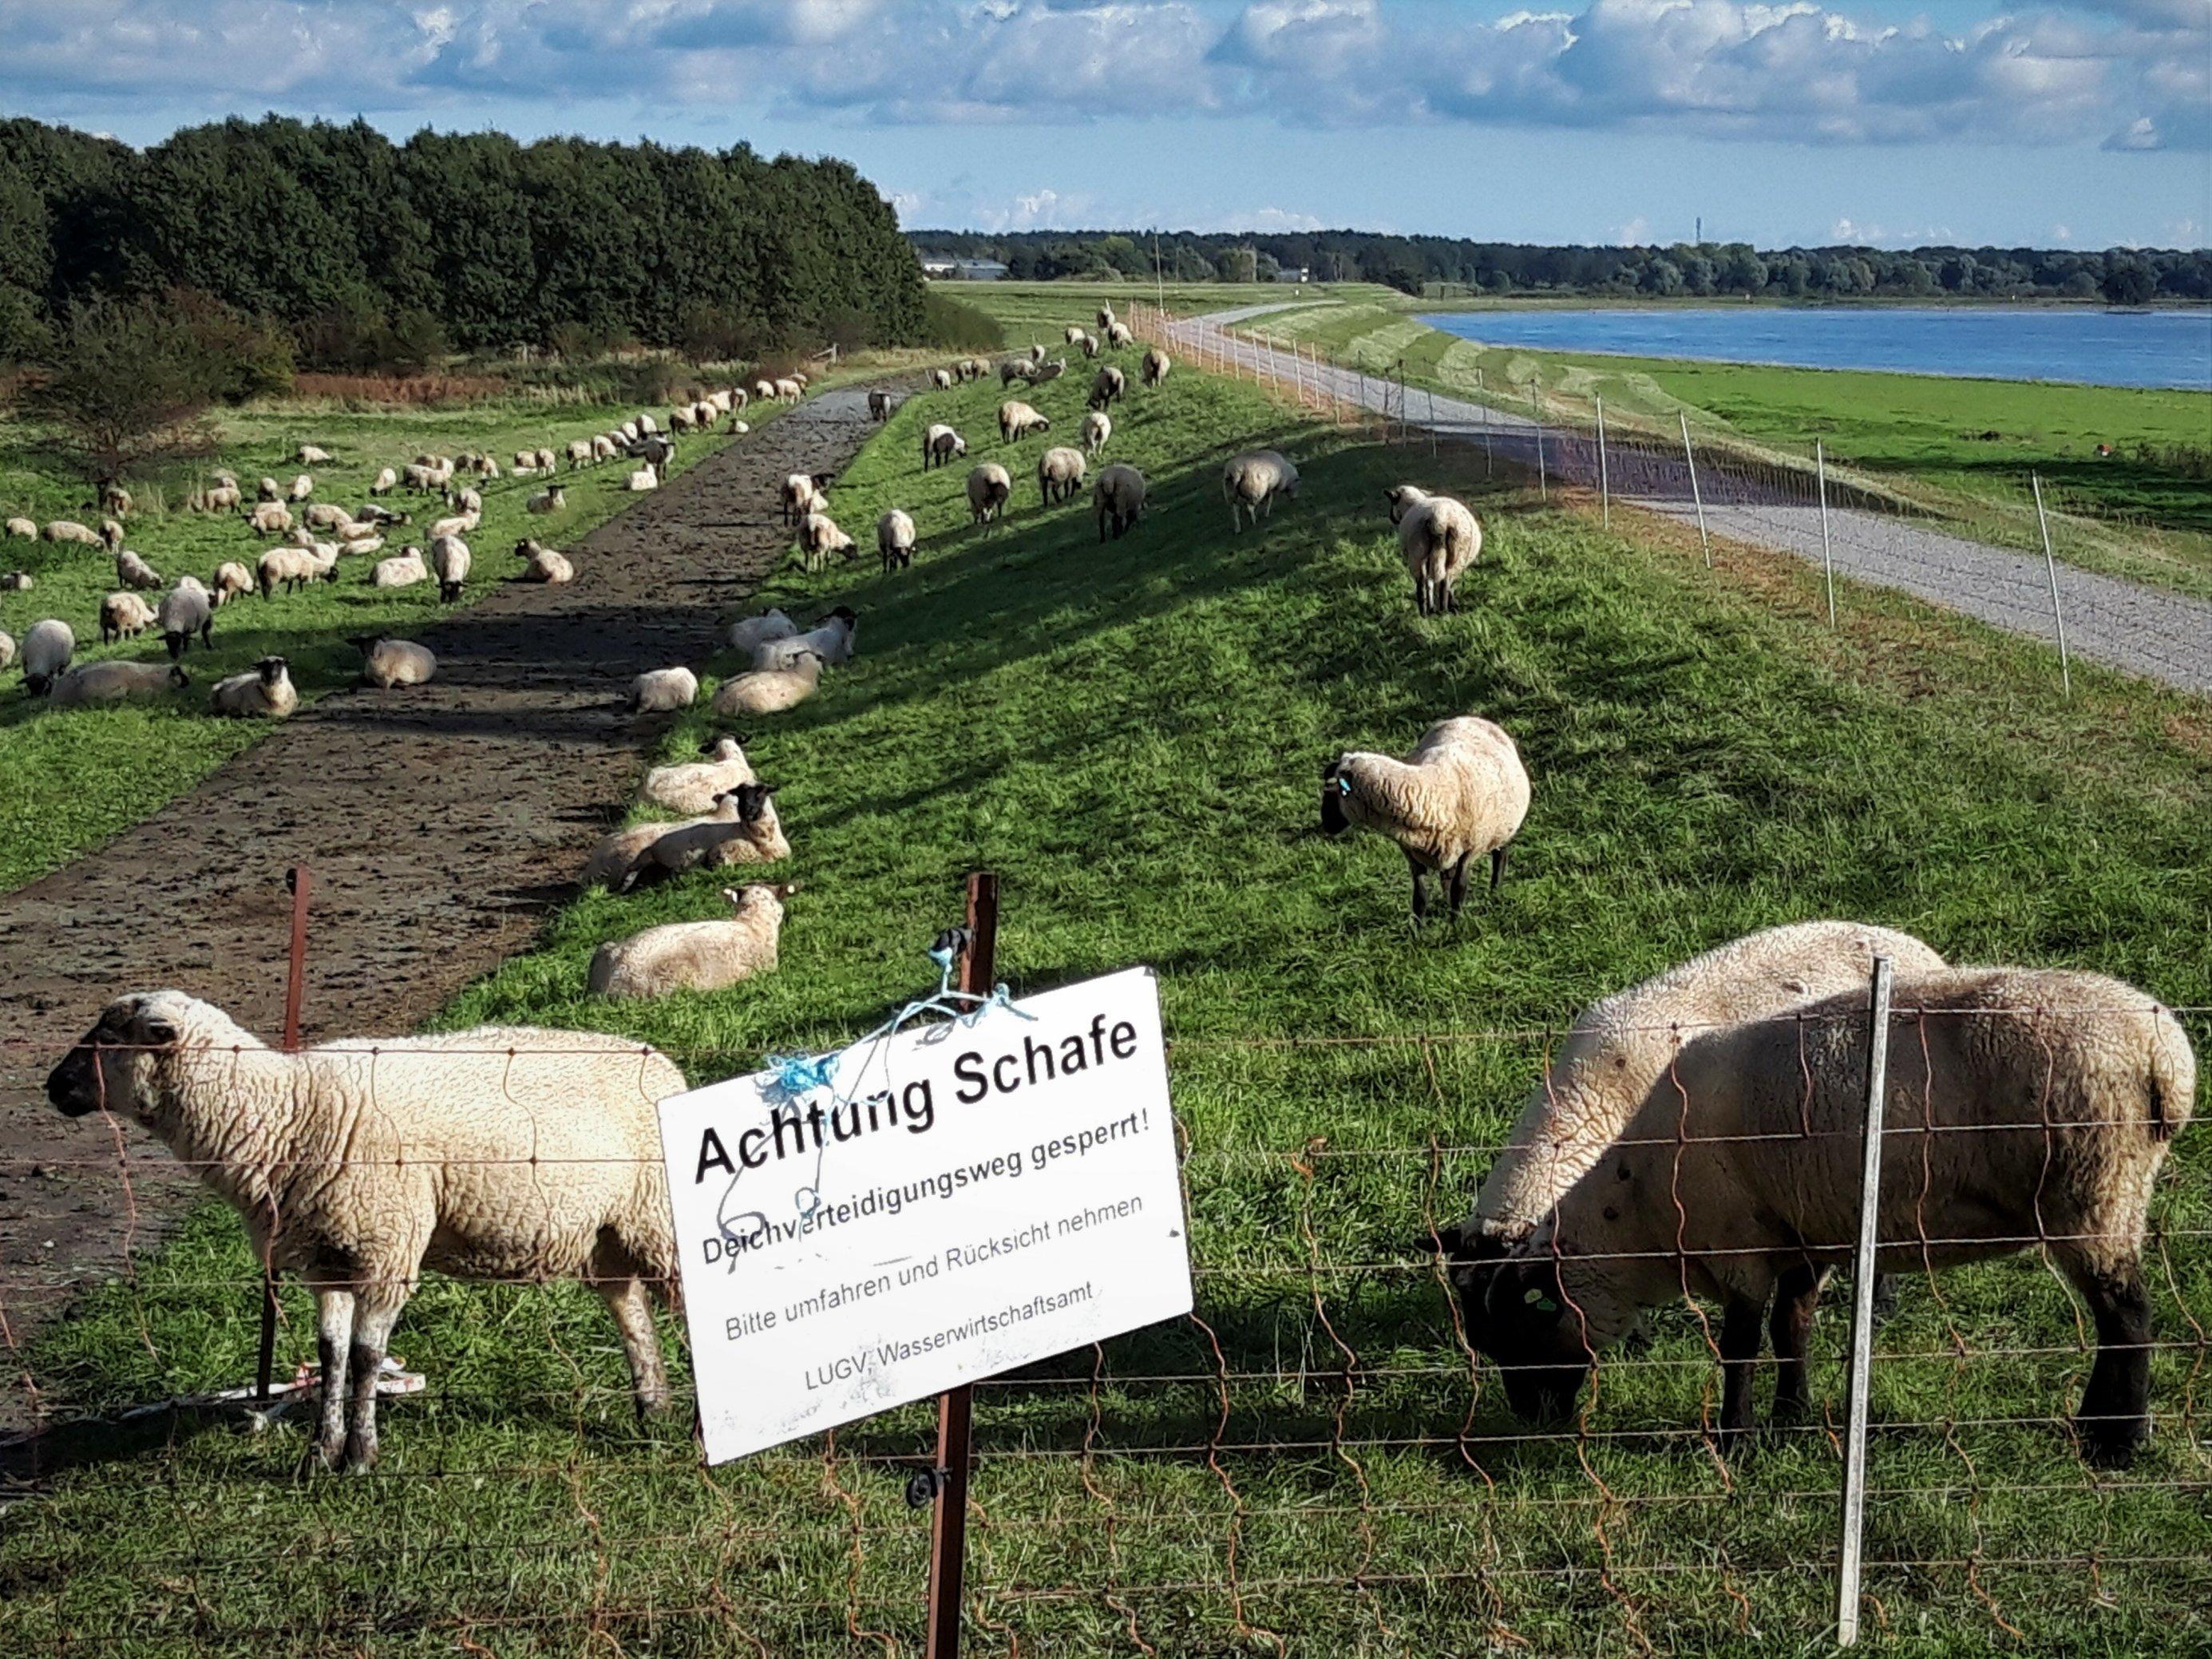 Am Zaun vor einer Schafherde, die nordseitig der Elbe, die rechts im Bild zu sehen ist, am Deich grasen, hängt das Schild „Achtung Schafe – Deichverteidigungsweg gesperrt! Bitte umfahren und Rücksicht nehmen“.